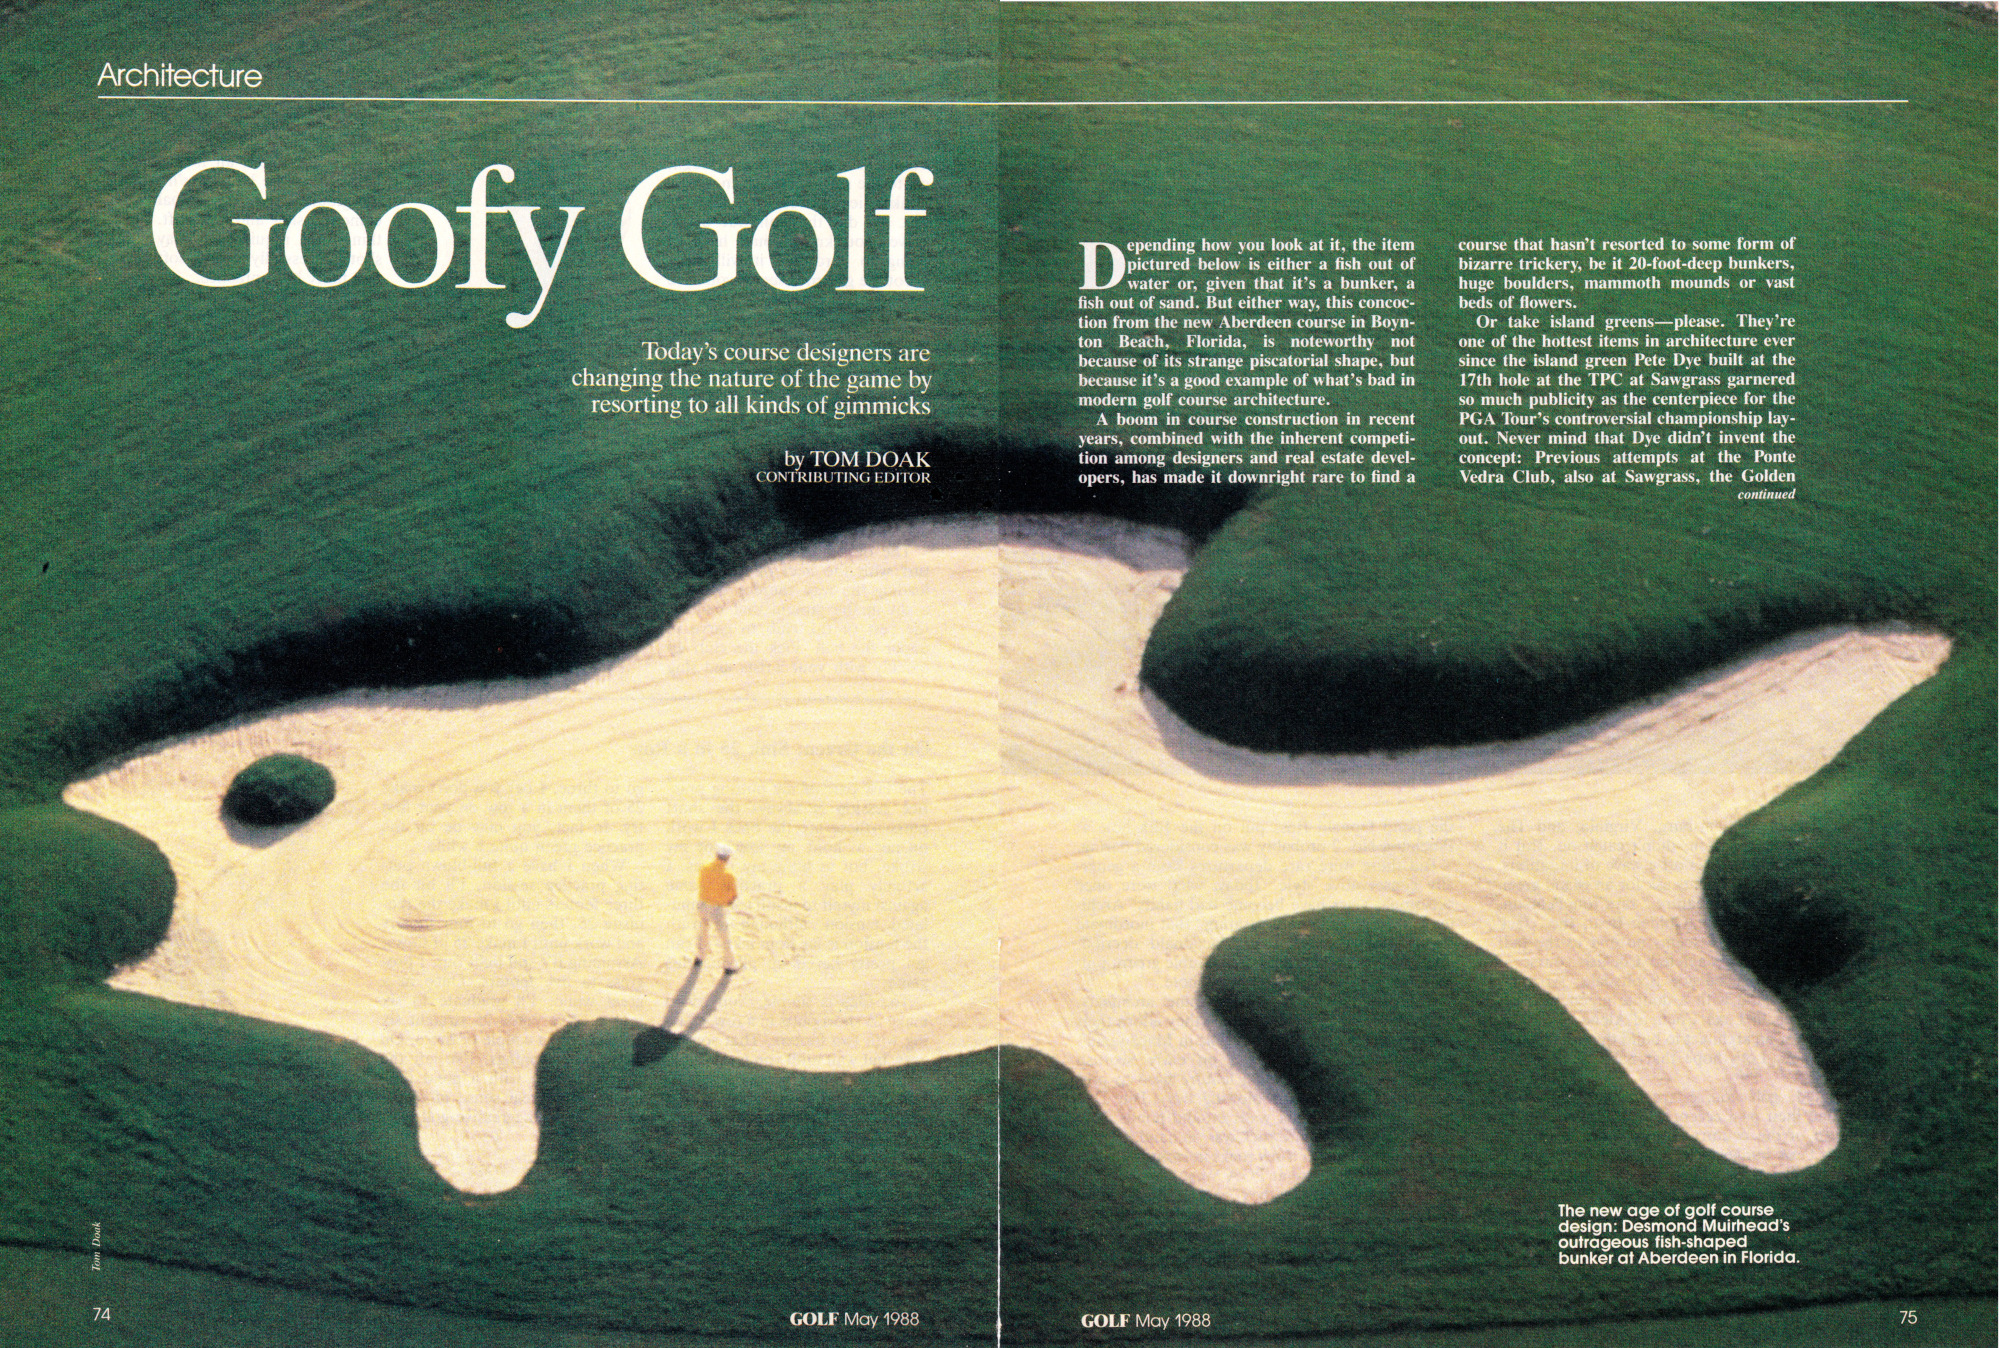 Goofy Golf by Tom Doak